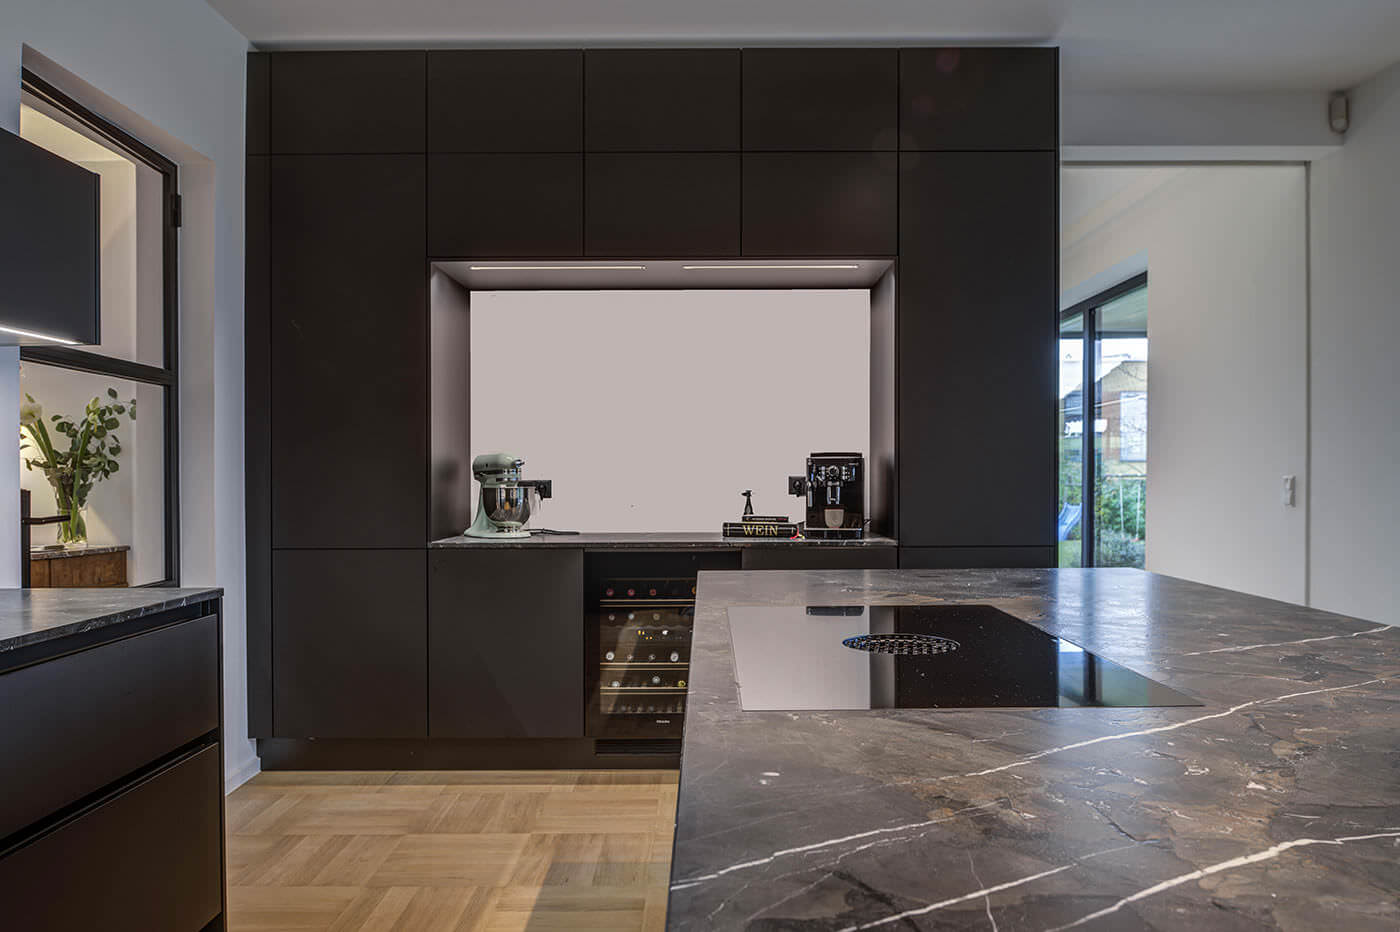 Moderne dunkle Küche mit Arbeitsplatte in Stein-Optik, Kochfeld mit integriertem Dampfabzug, stylischen Geräten, Weinkühler und Durchreiche